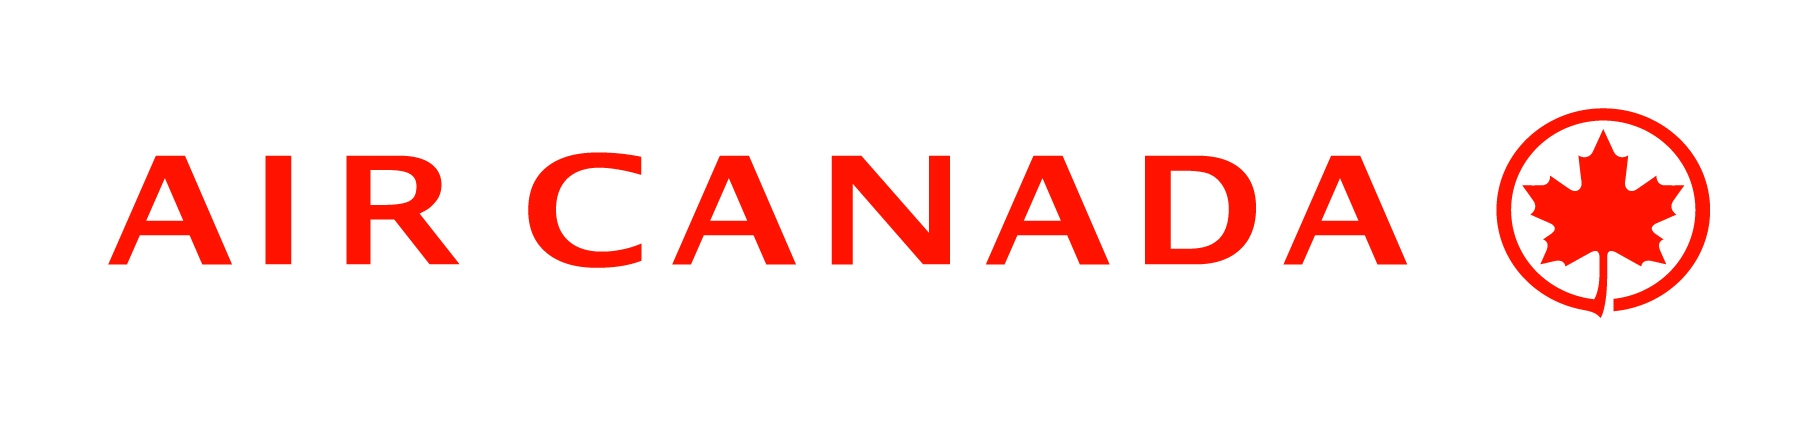 aircanada_logo